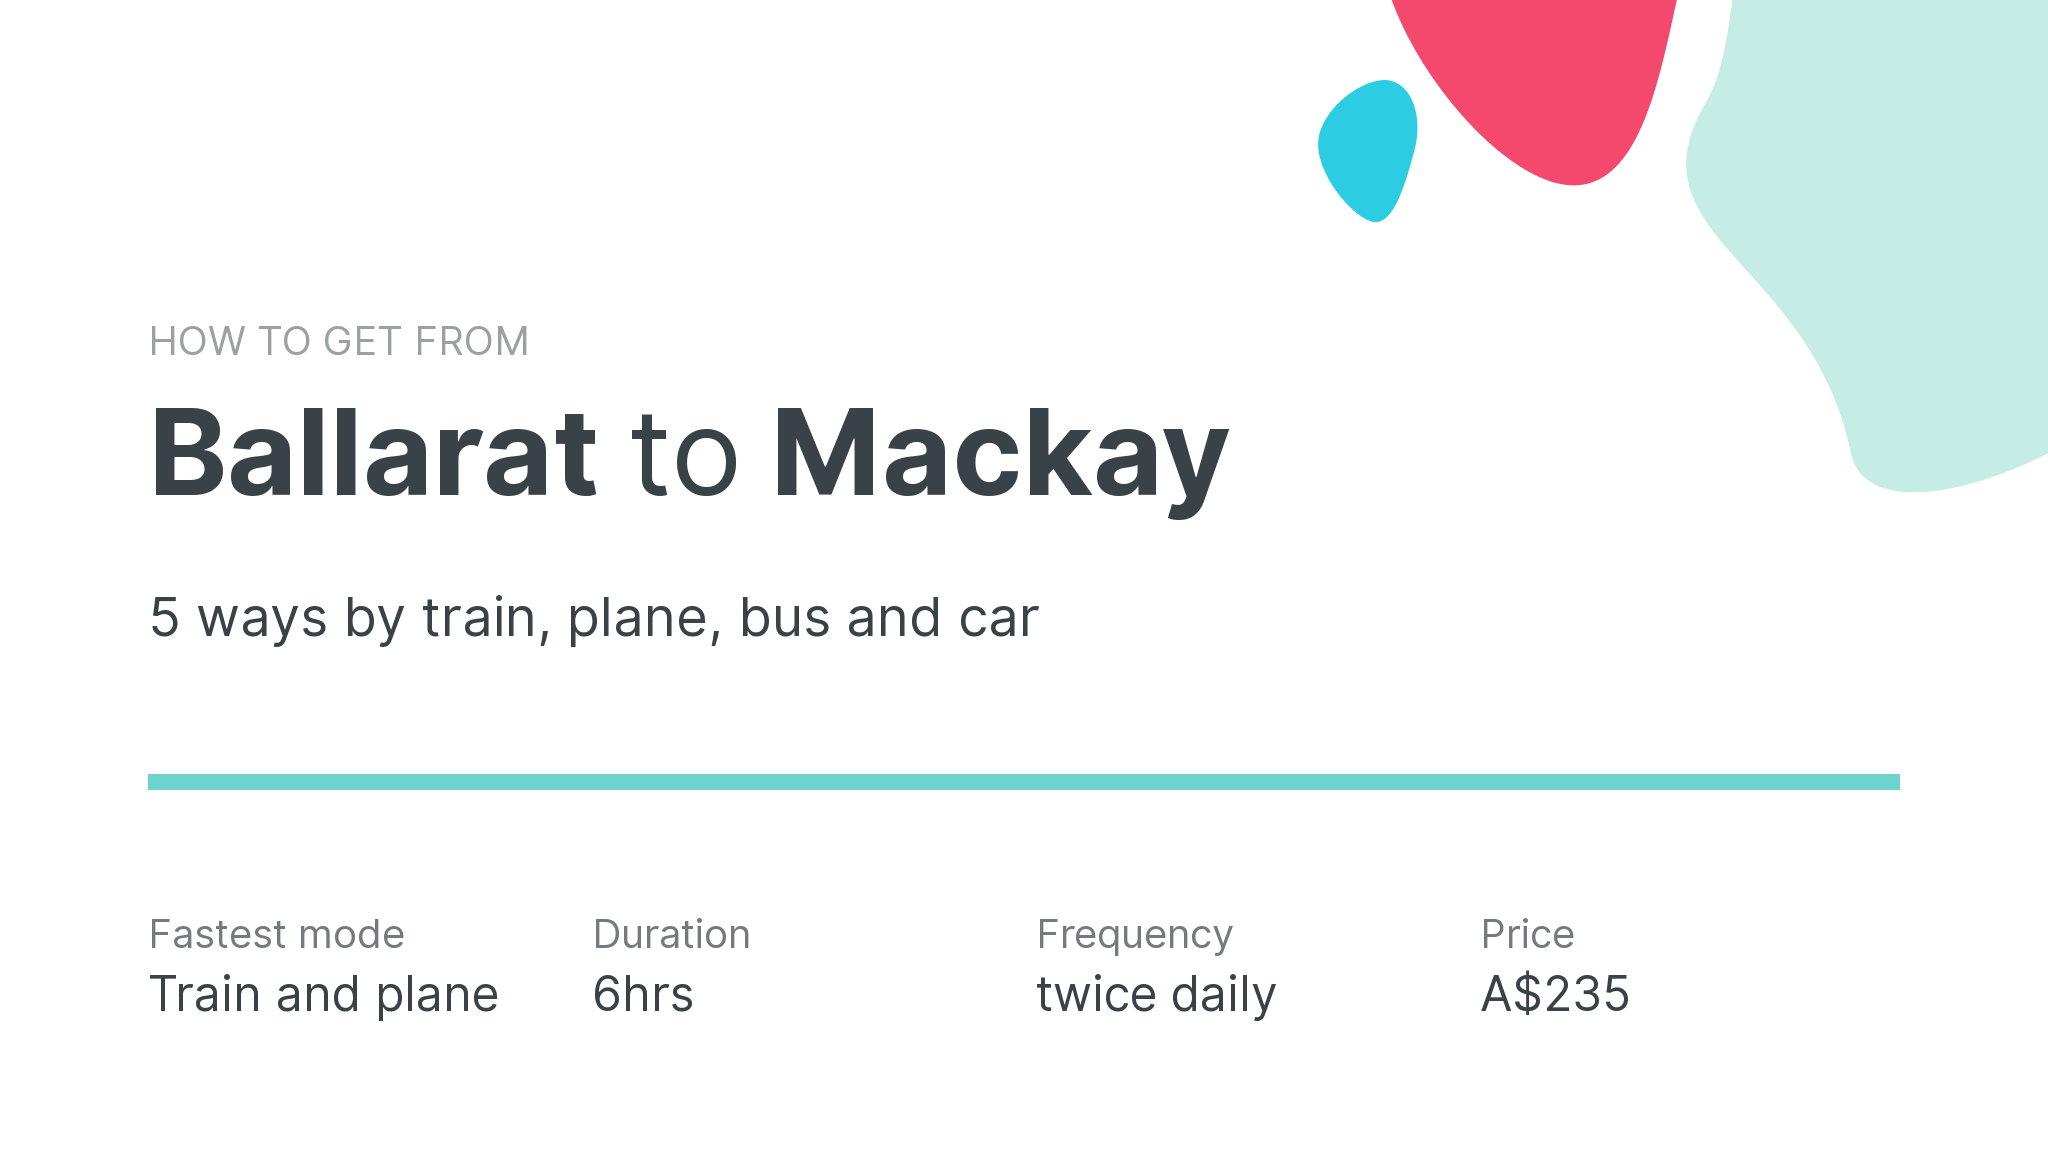 How do I get from Ballarat to Mackay